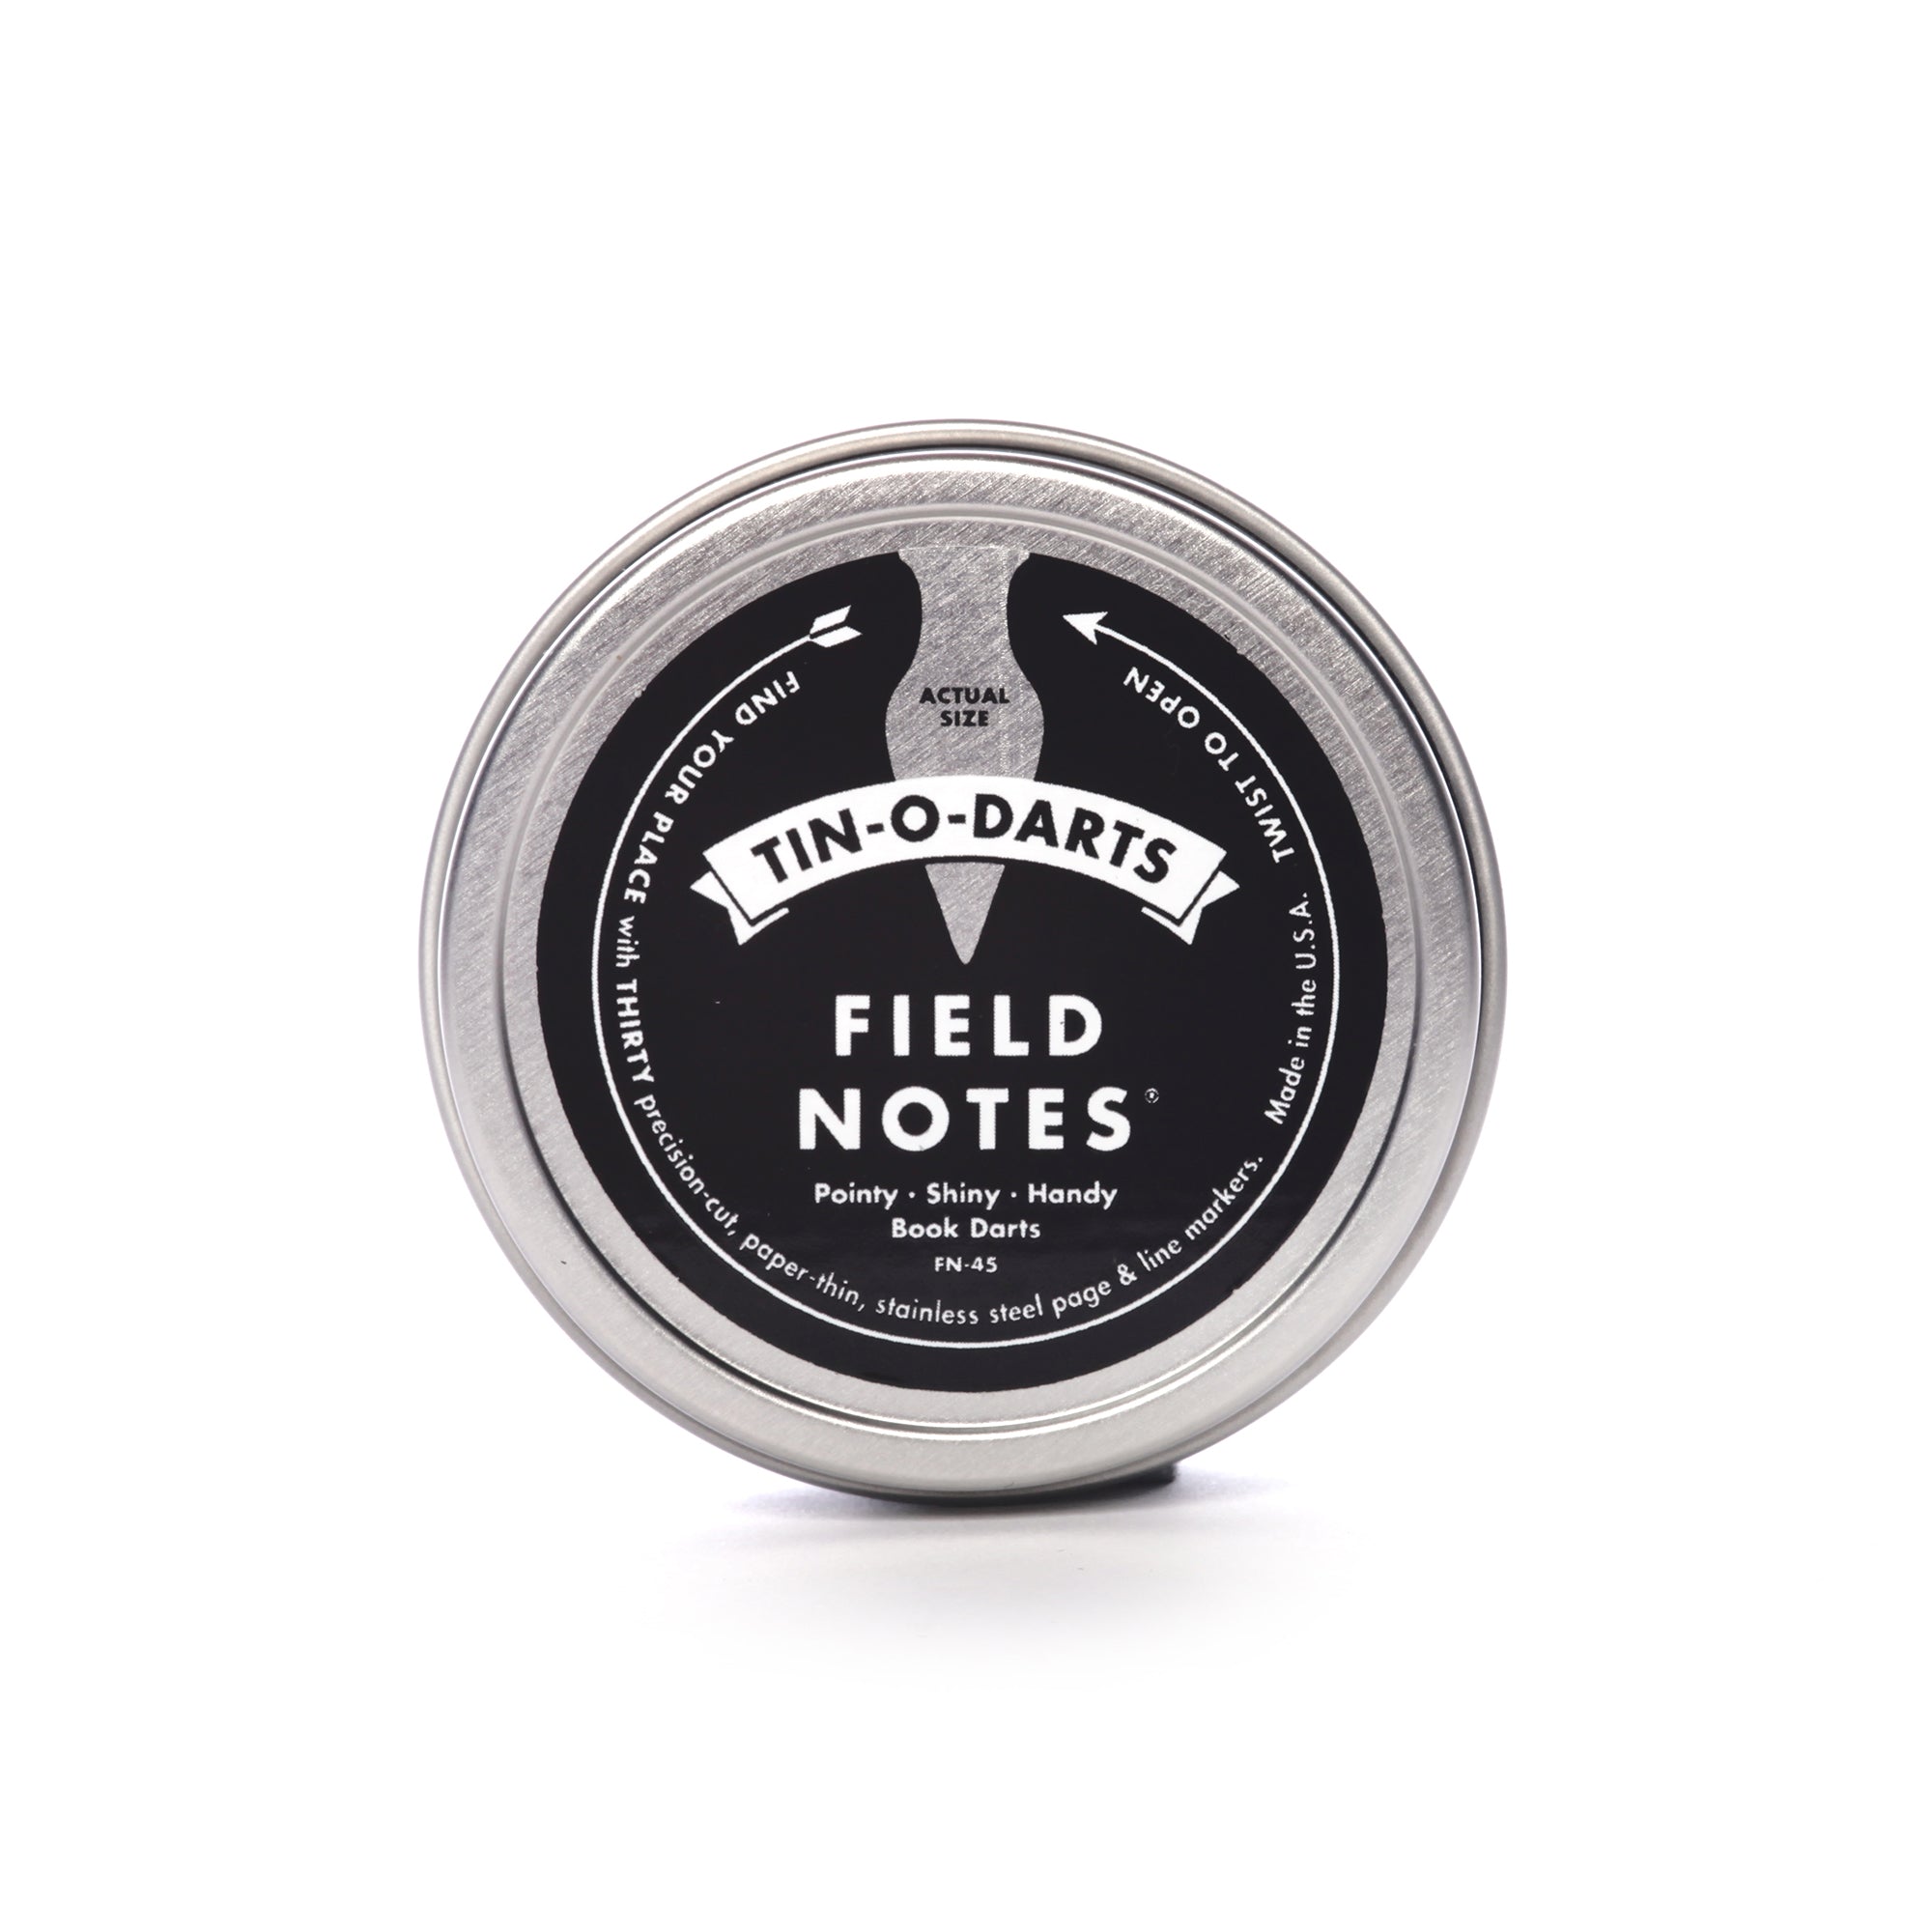 Field Notes: Tin-O-Darts